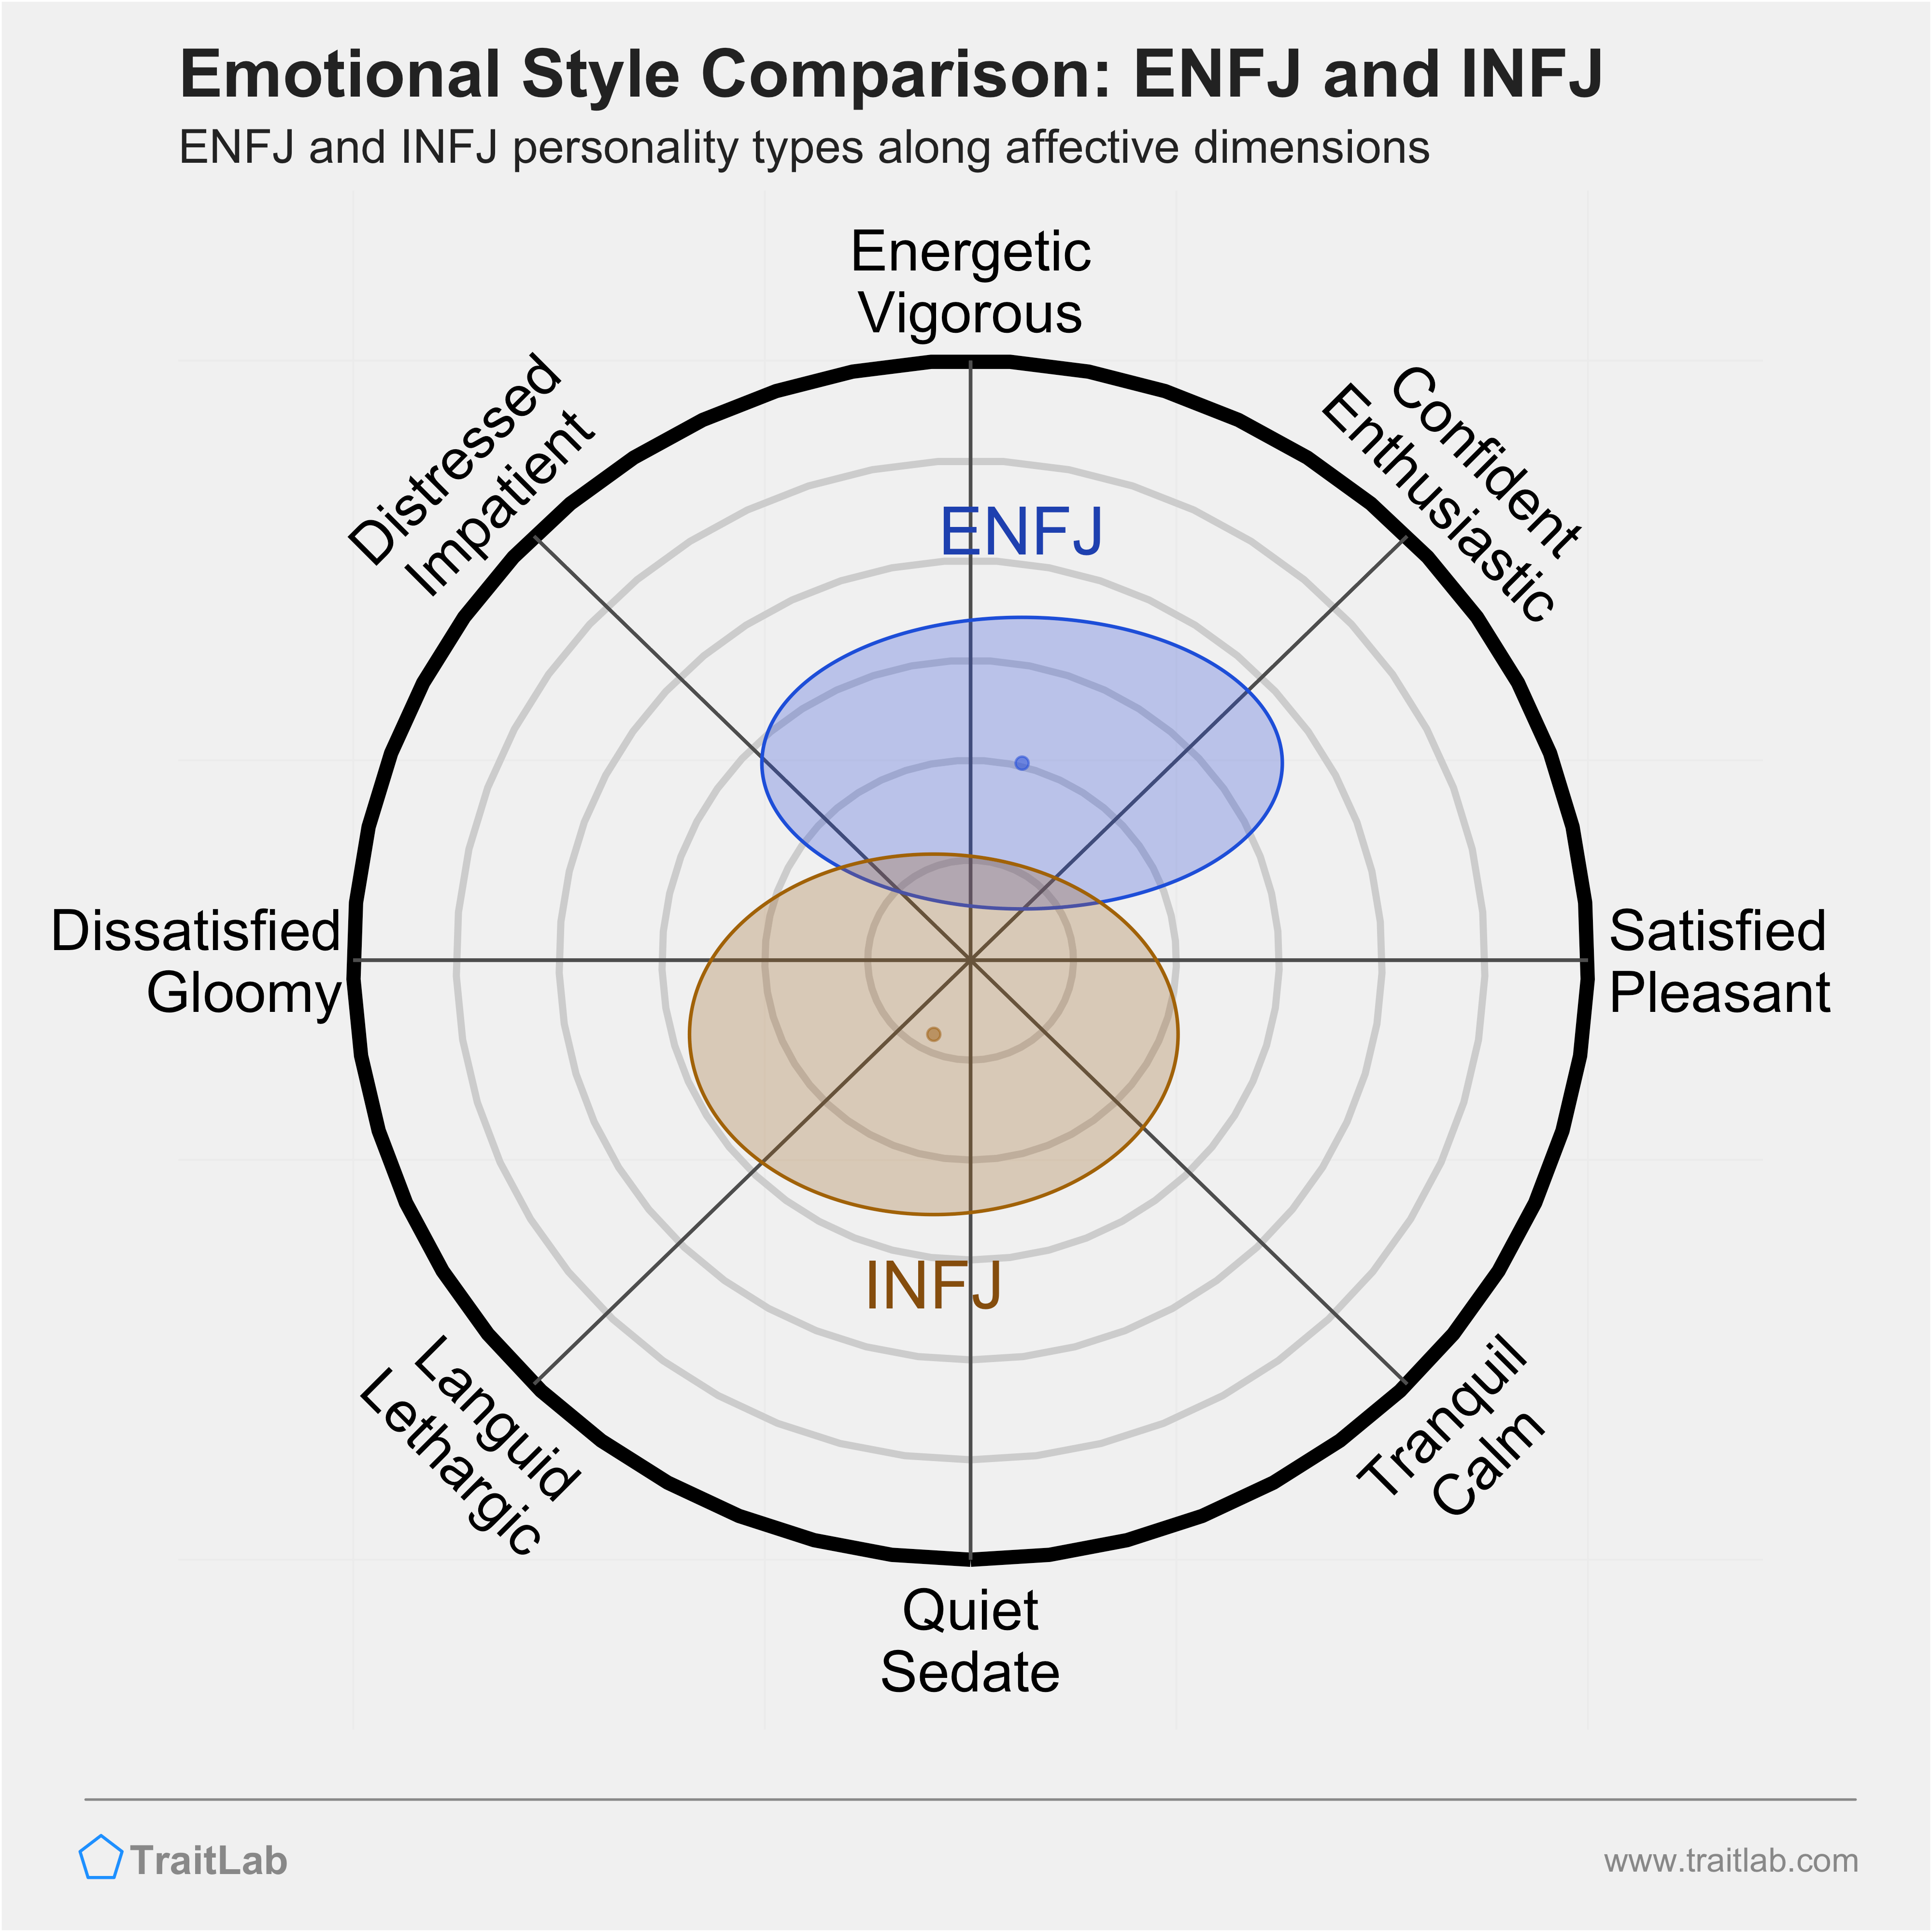 ENFJ and INFJ comparison across emotional (affective) dimensions